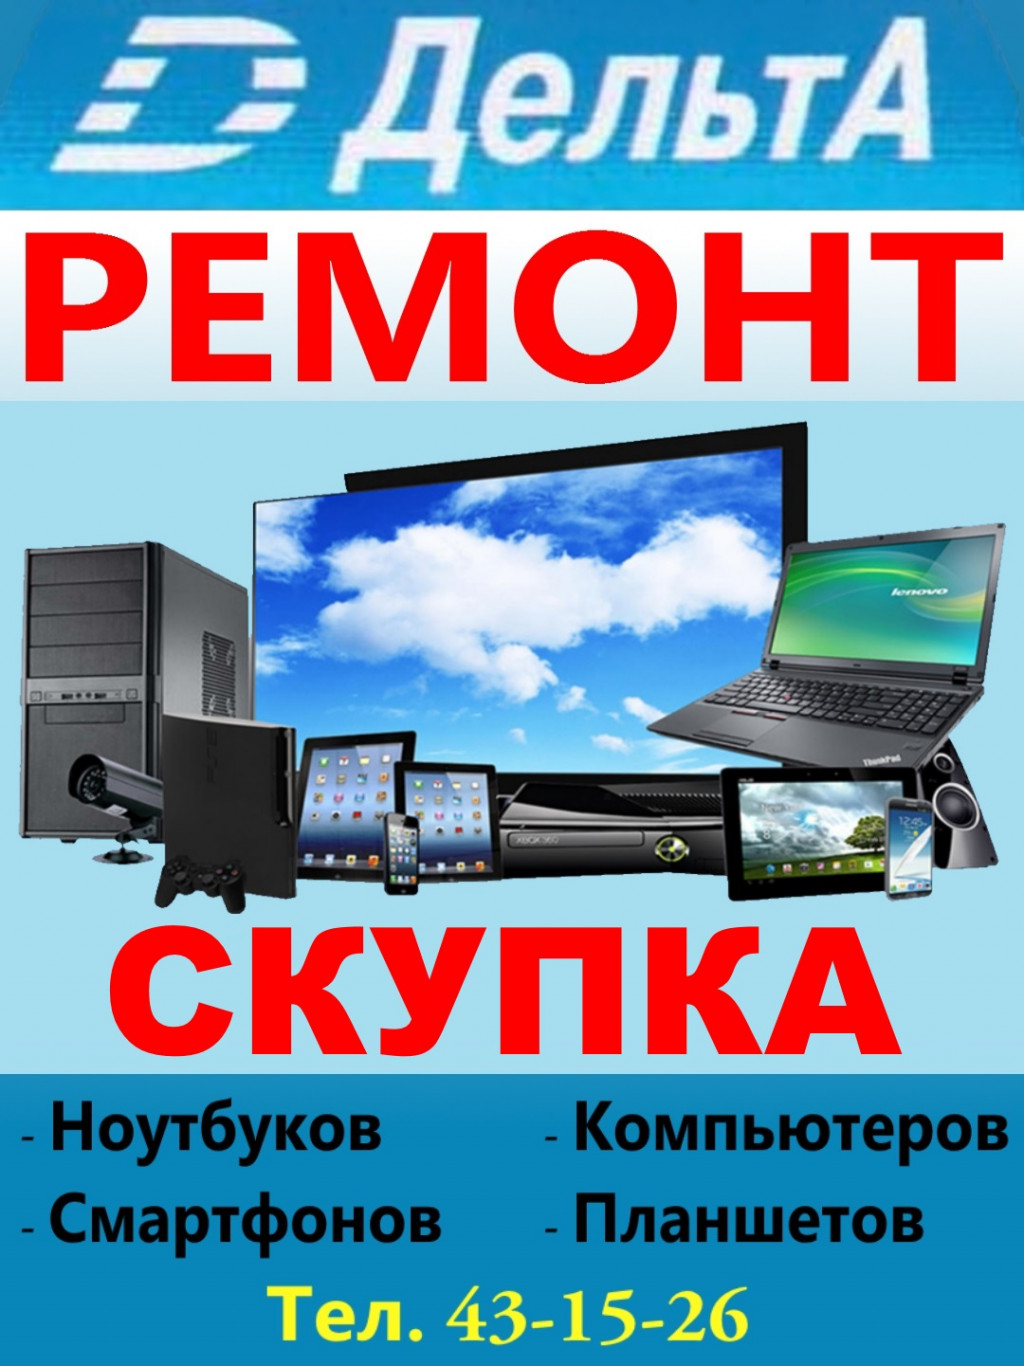 ДельтА - Сервисный Центр  - ремонт факсов  